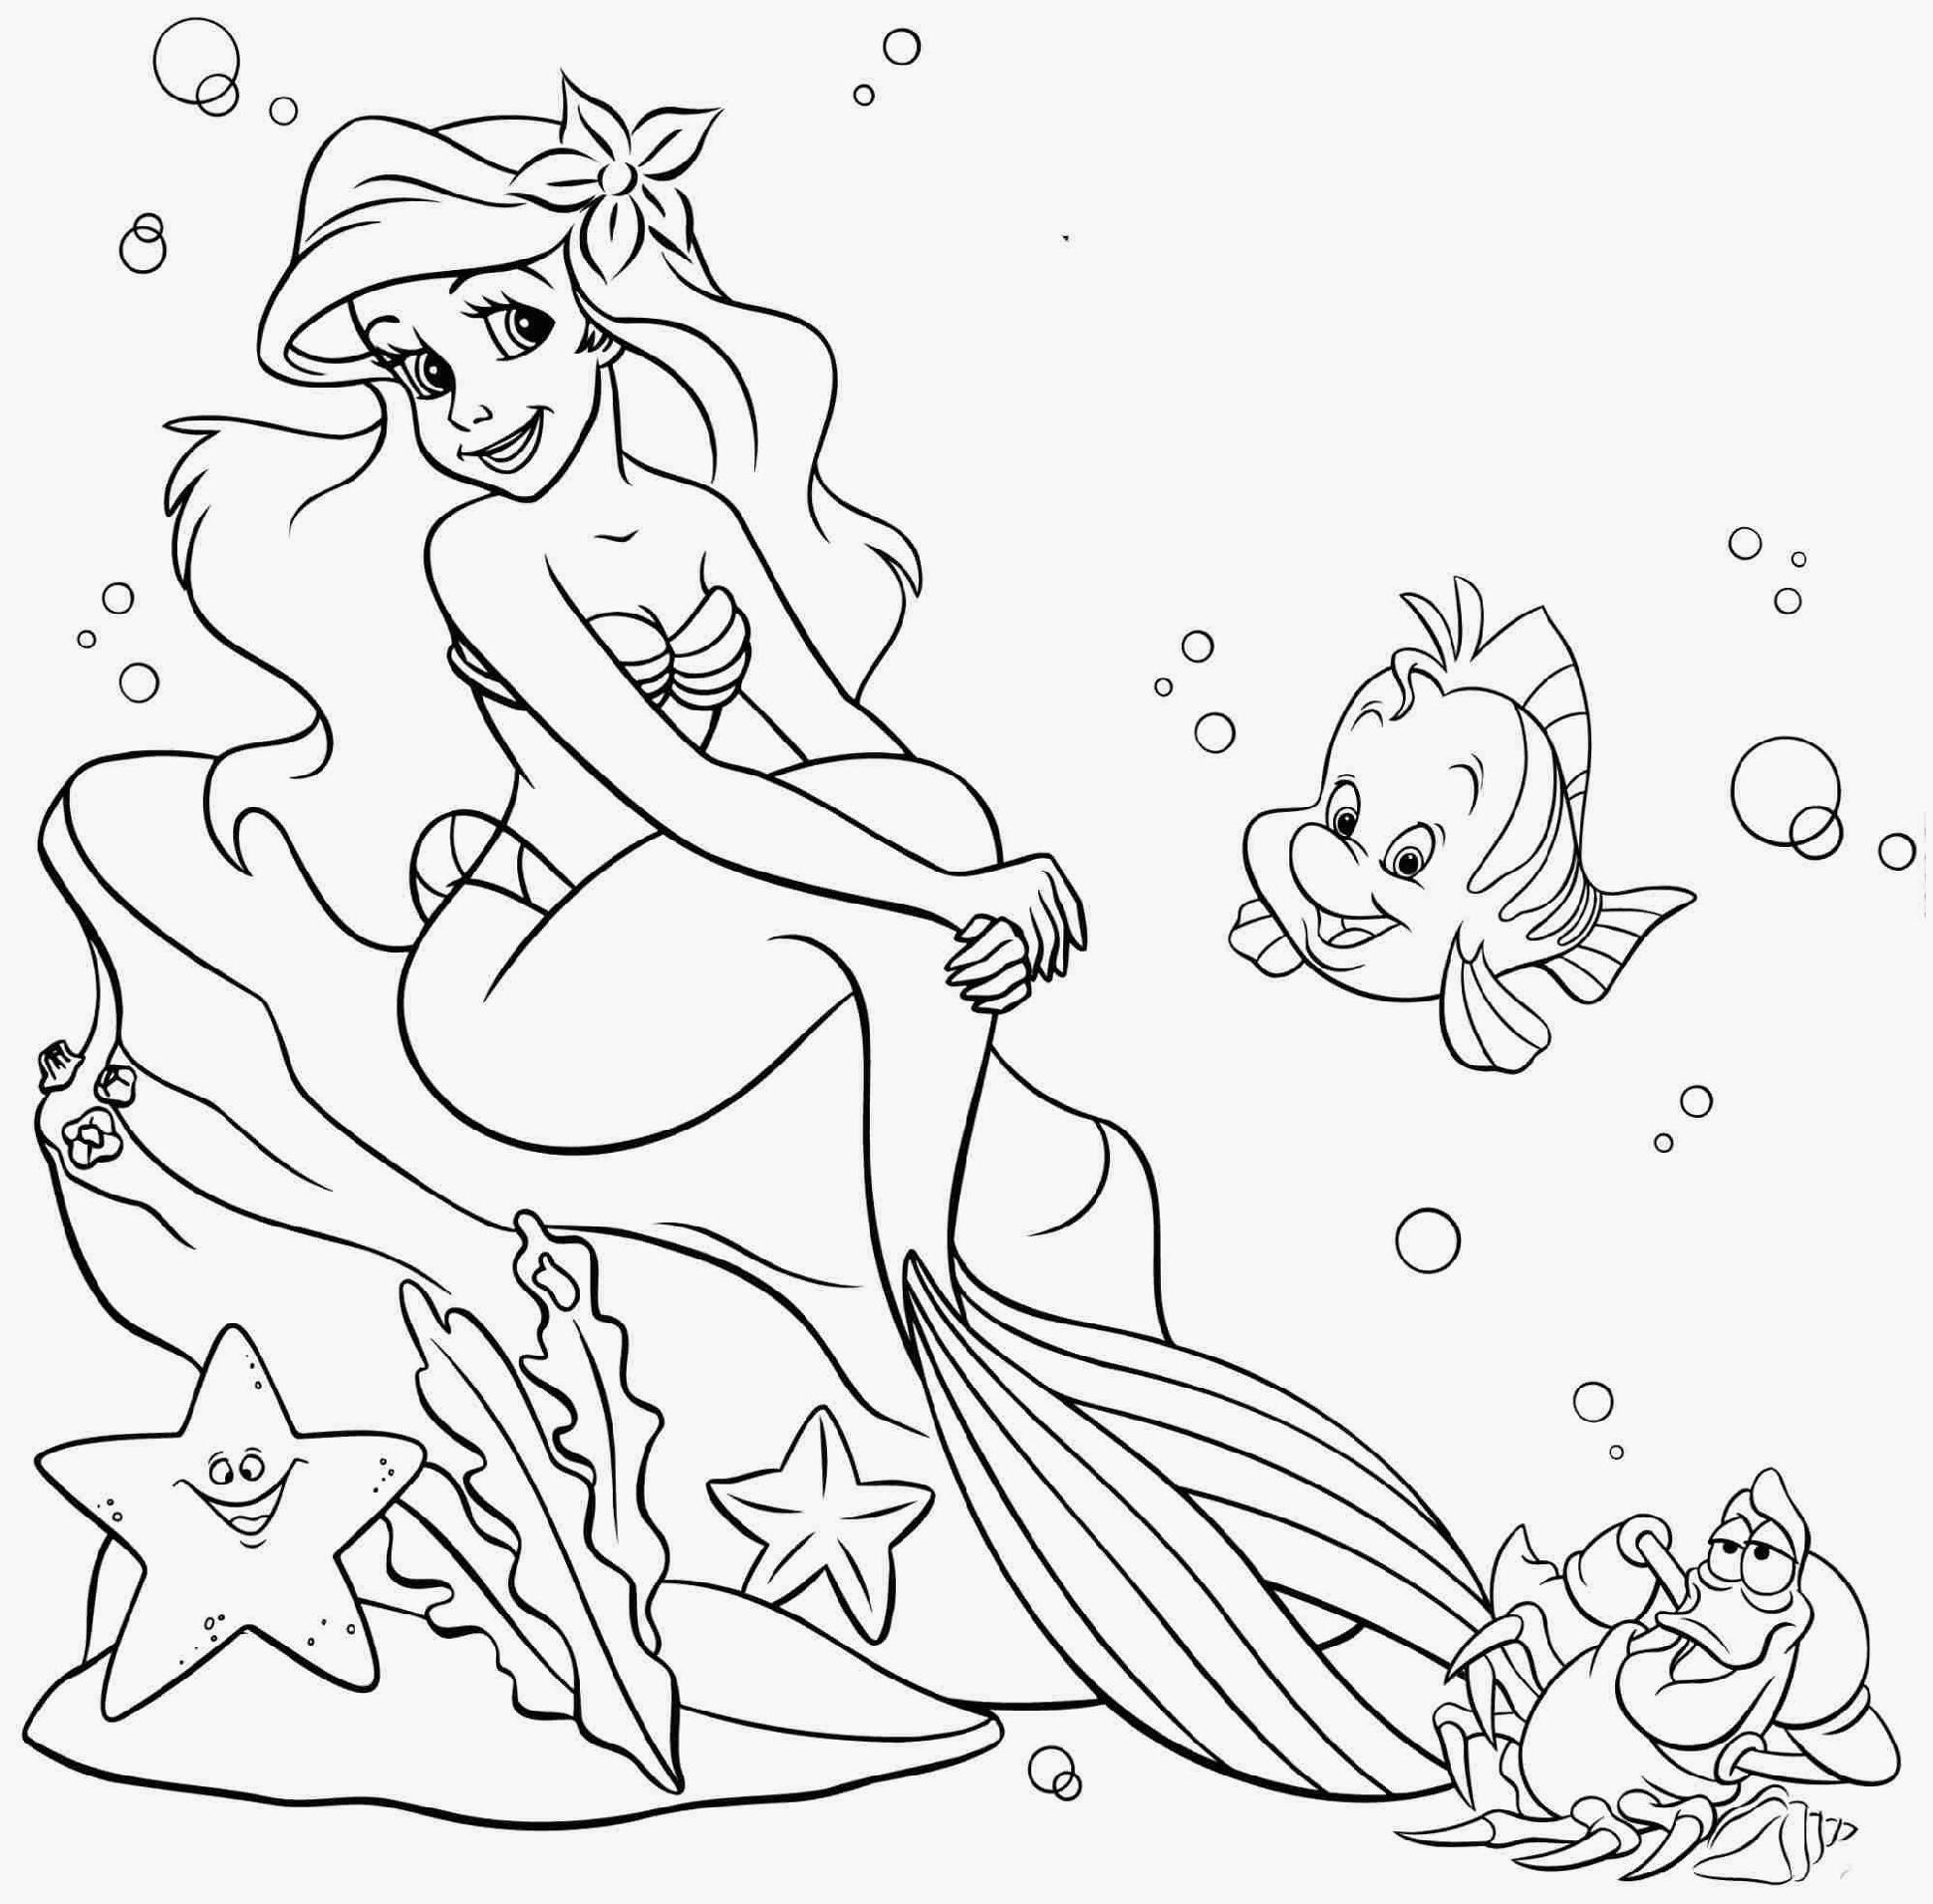 Mako Mermaids Coloring Pages. h2o plötzlich meerjungfrau. h20 just ...